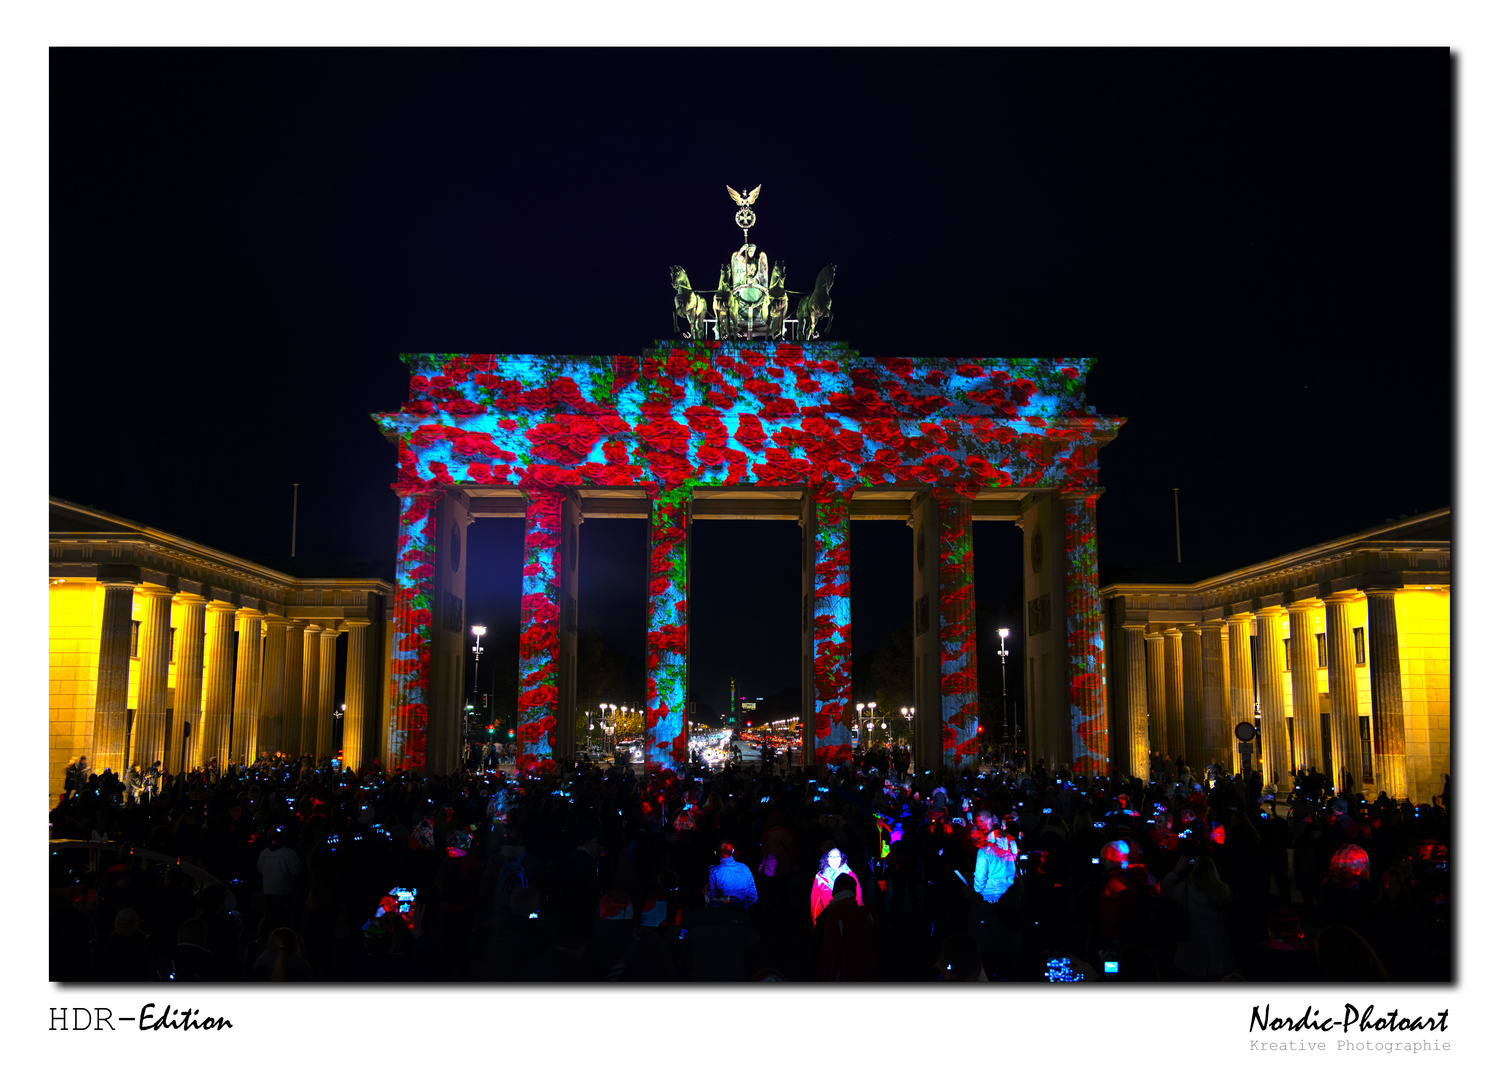 Festival of Lights 2013 - Brandenburger Tor